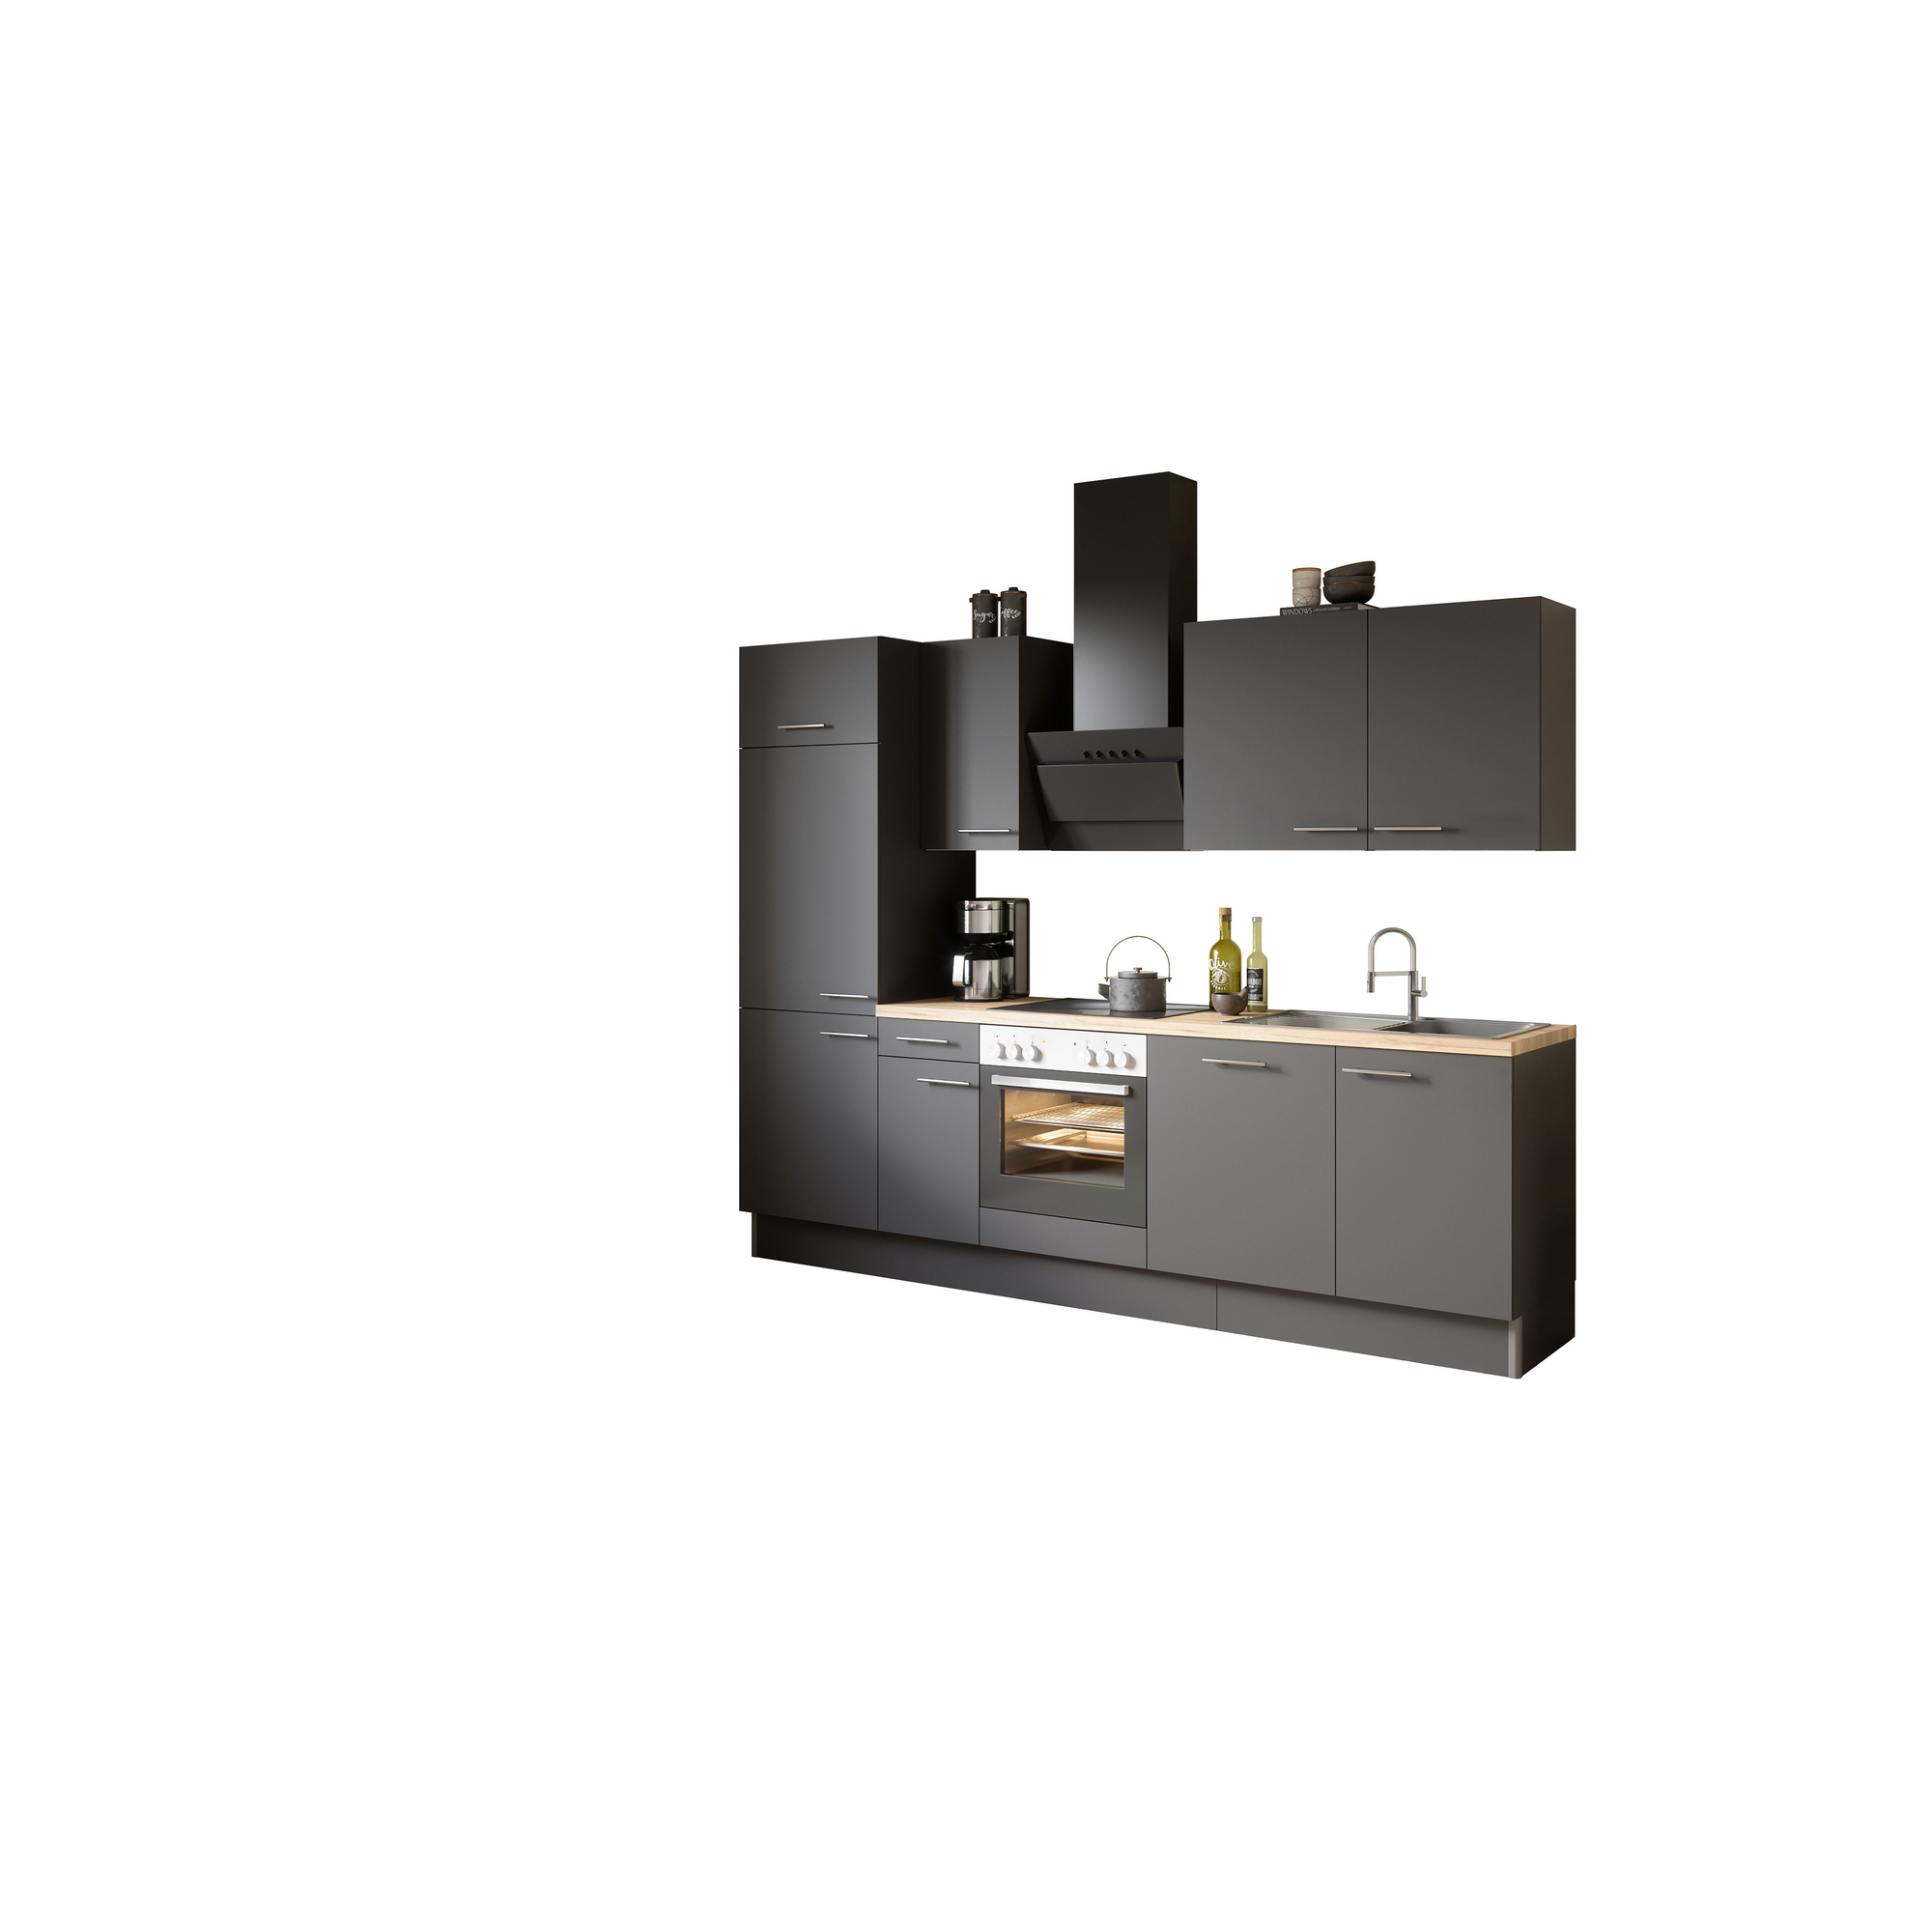 Küchenzeile mit E-Geräten 'OPTIkoncept Ingvar420' anthrazit matt 270 cm + product picture